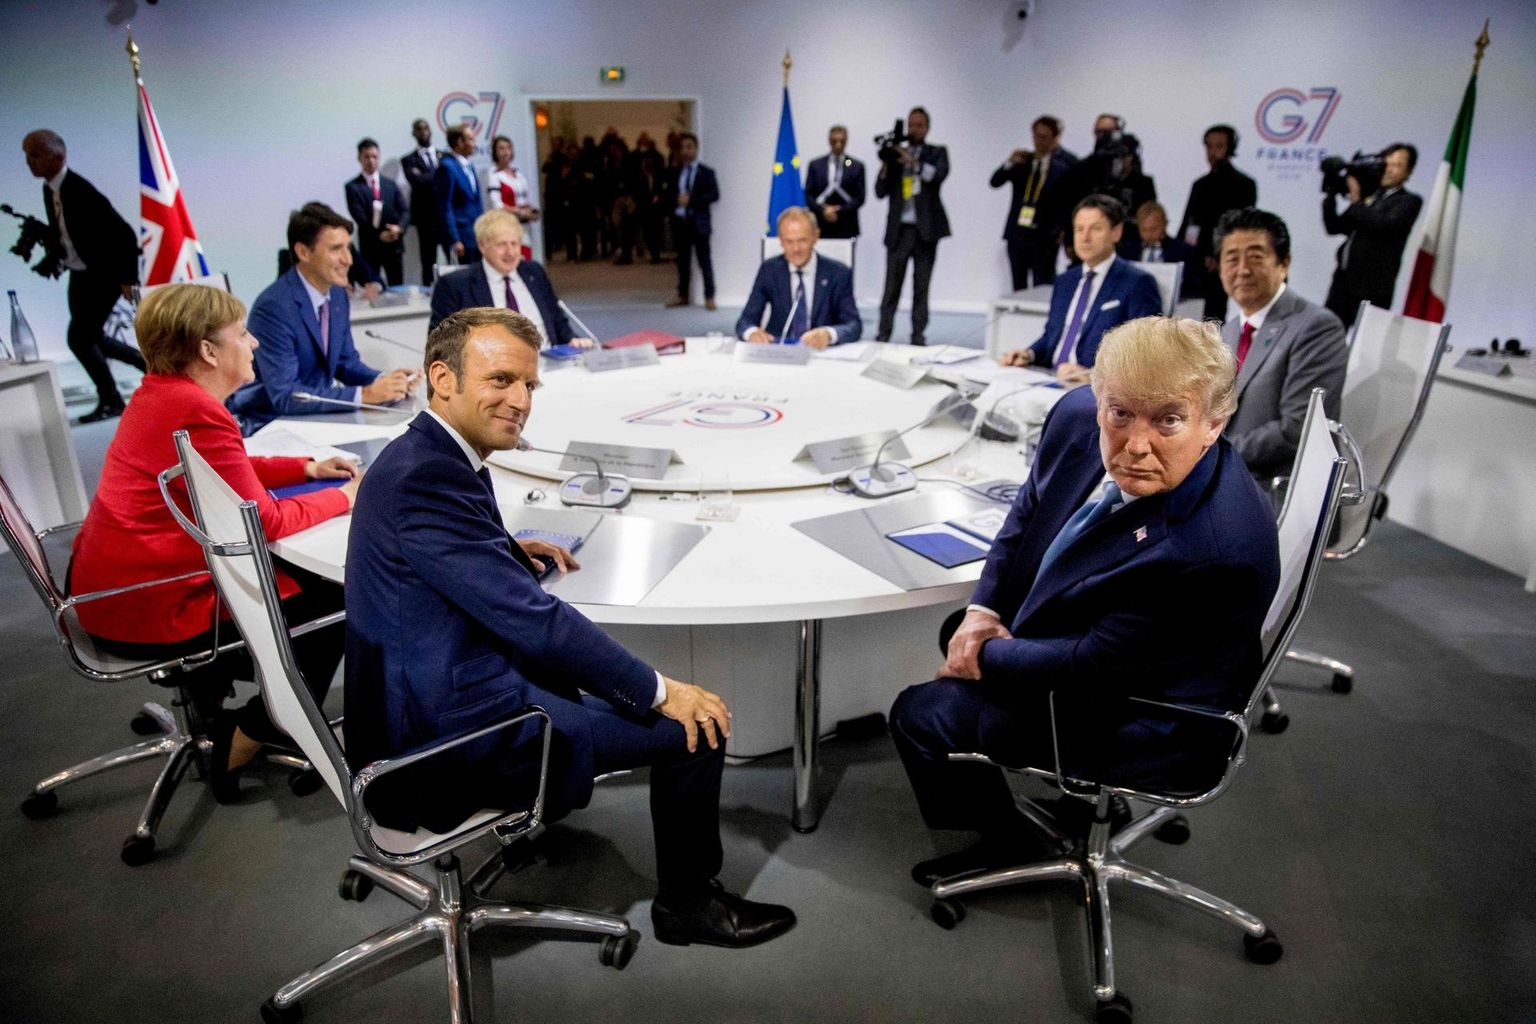 Tänavust G7 kohtumist võõrustav Prantsusmaa president Emmanuel Macron otsustas ühisdeklaratsiooni loomisest loobuda, sest isegi ei looda USA presidendi Donald Trumpiga ühisele nõule jõuda. FOTO: Andrew Harnik/afp/scanpix